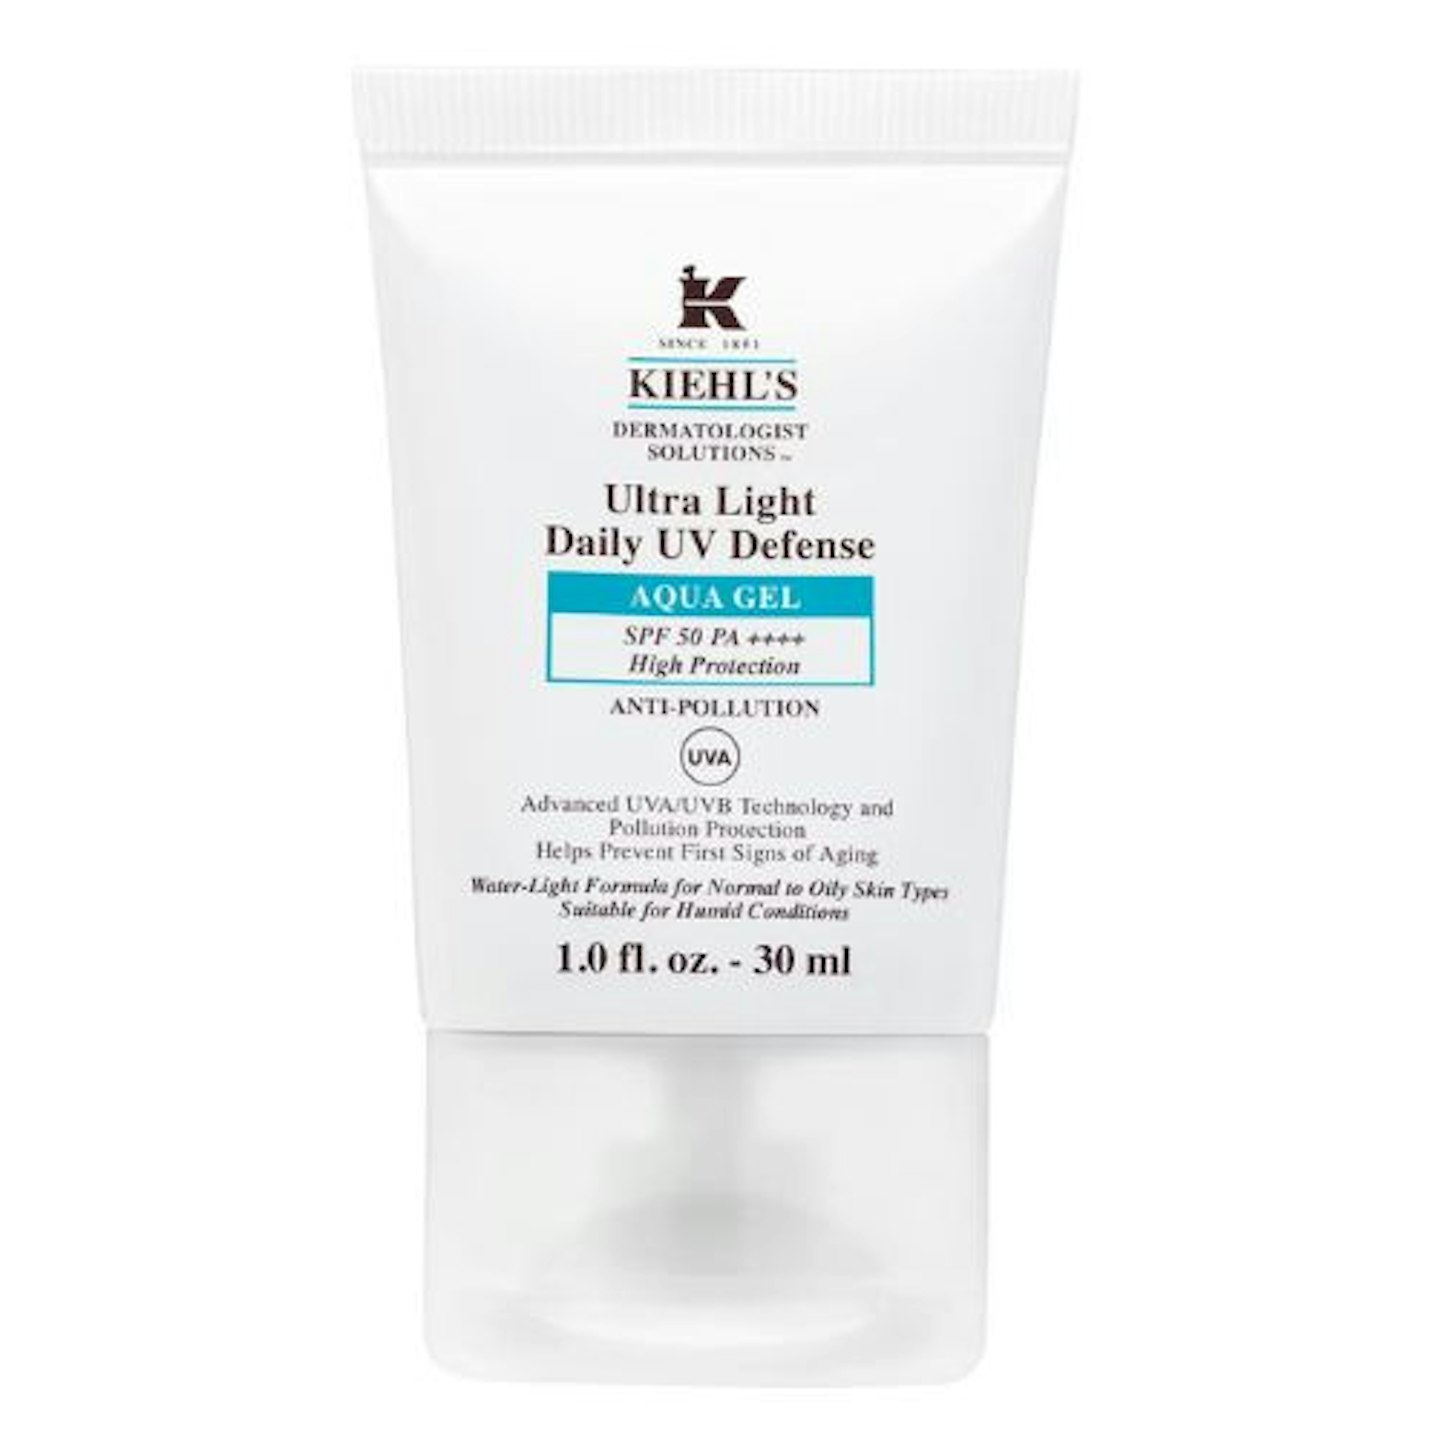 Kiehl's Ultra Light Daily UV Defense Aqua Gel SPF 50